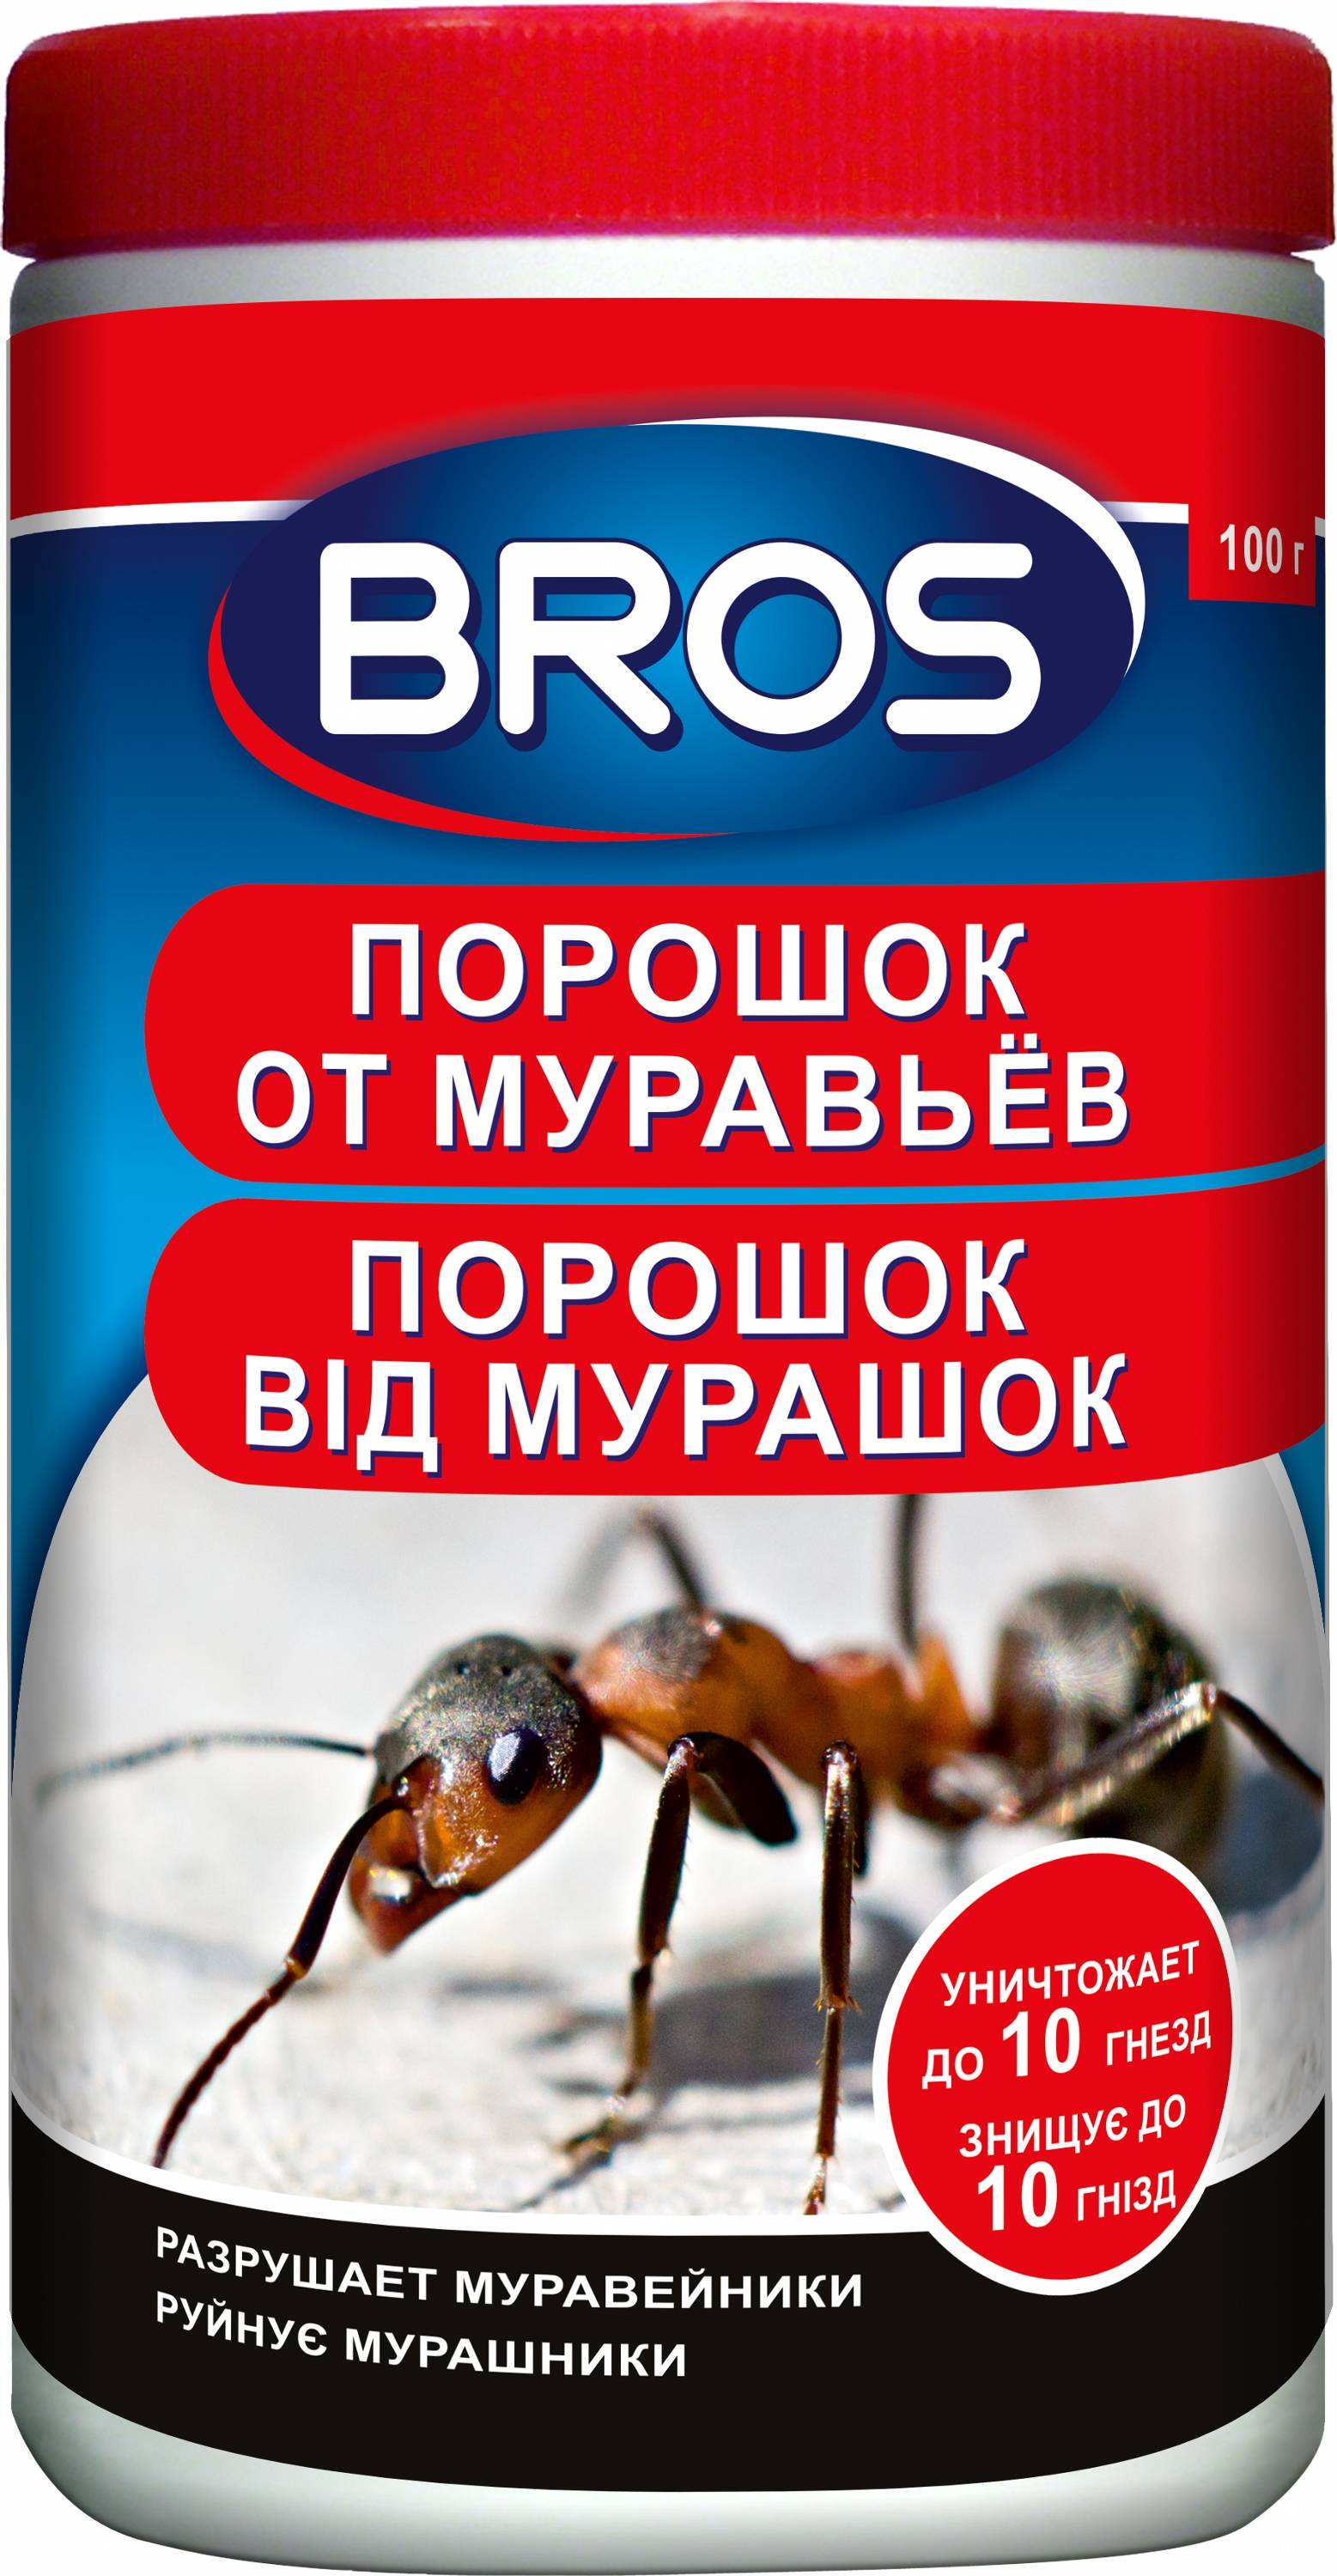 BROS – порошок от муравьёв